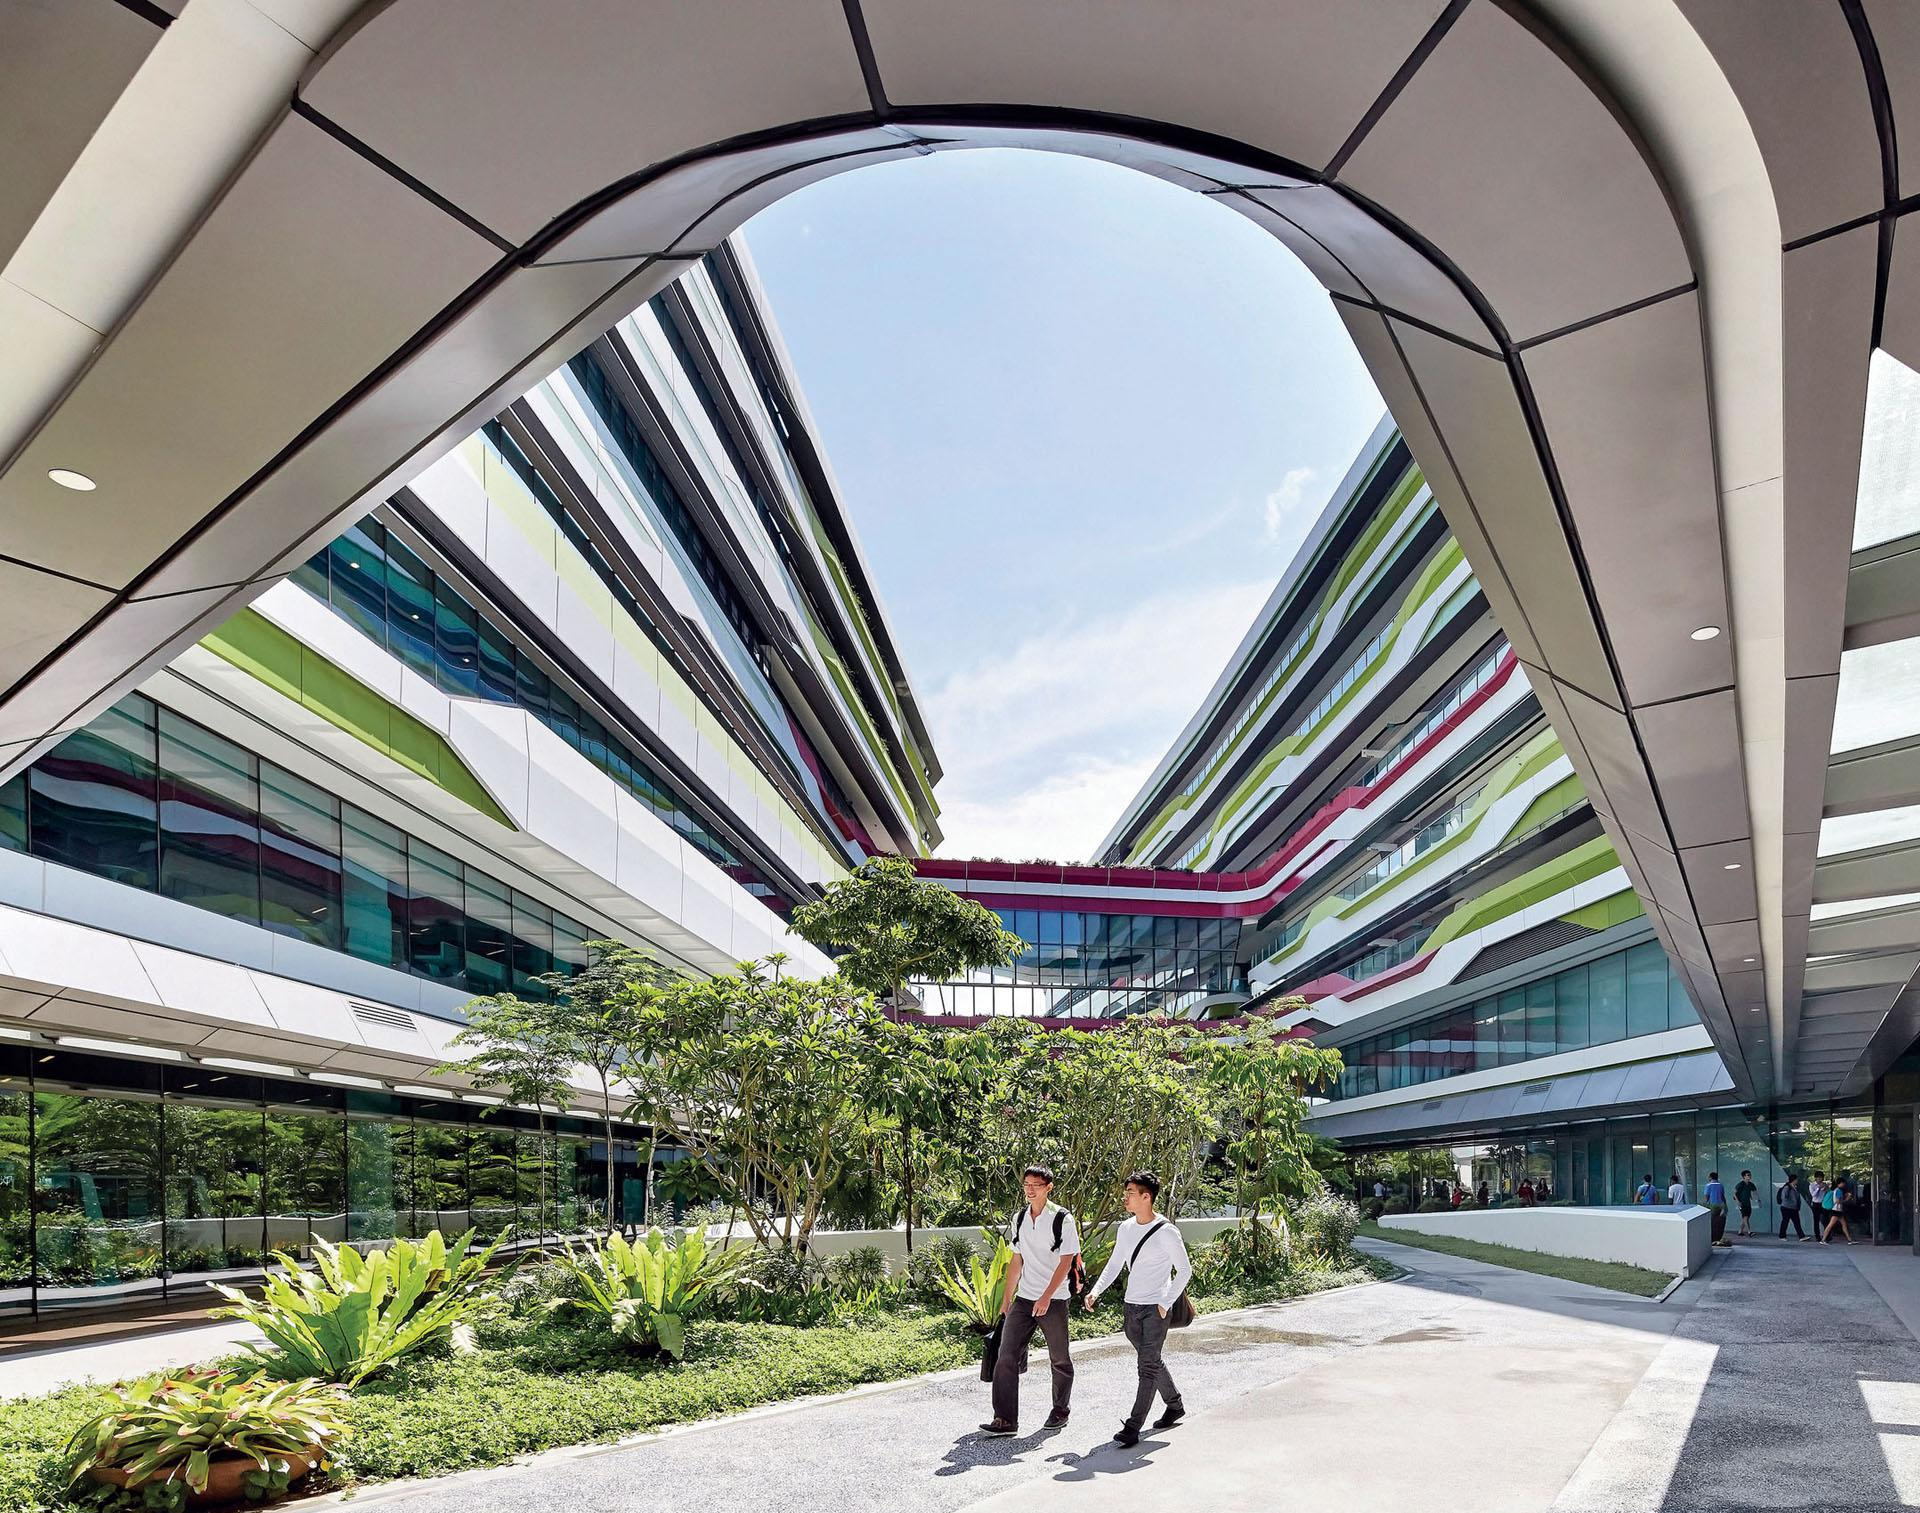 Educated Design in Singapore